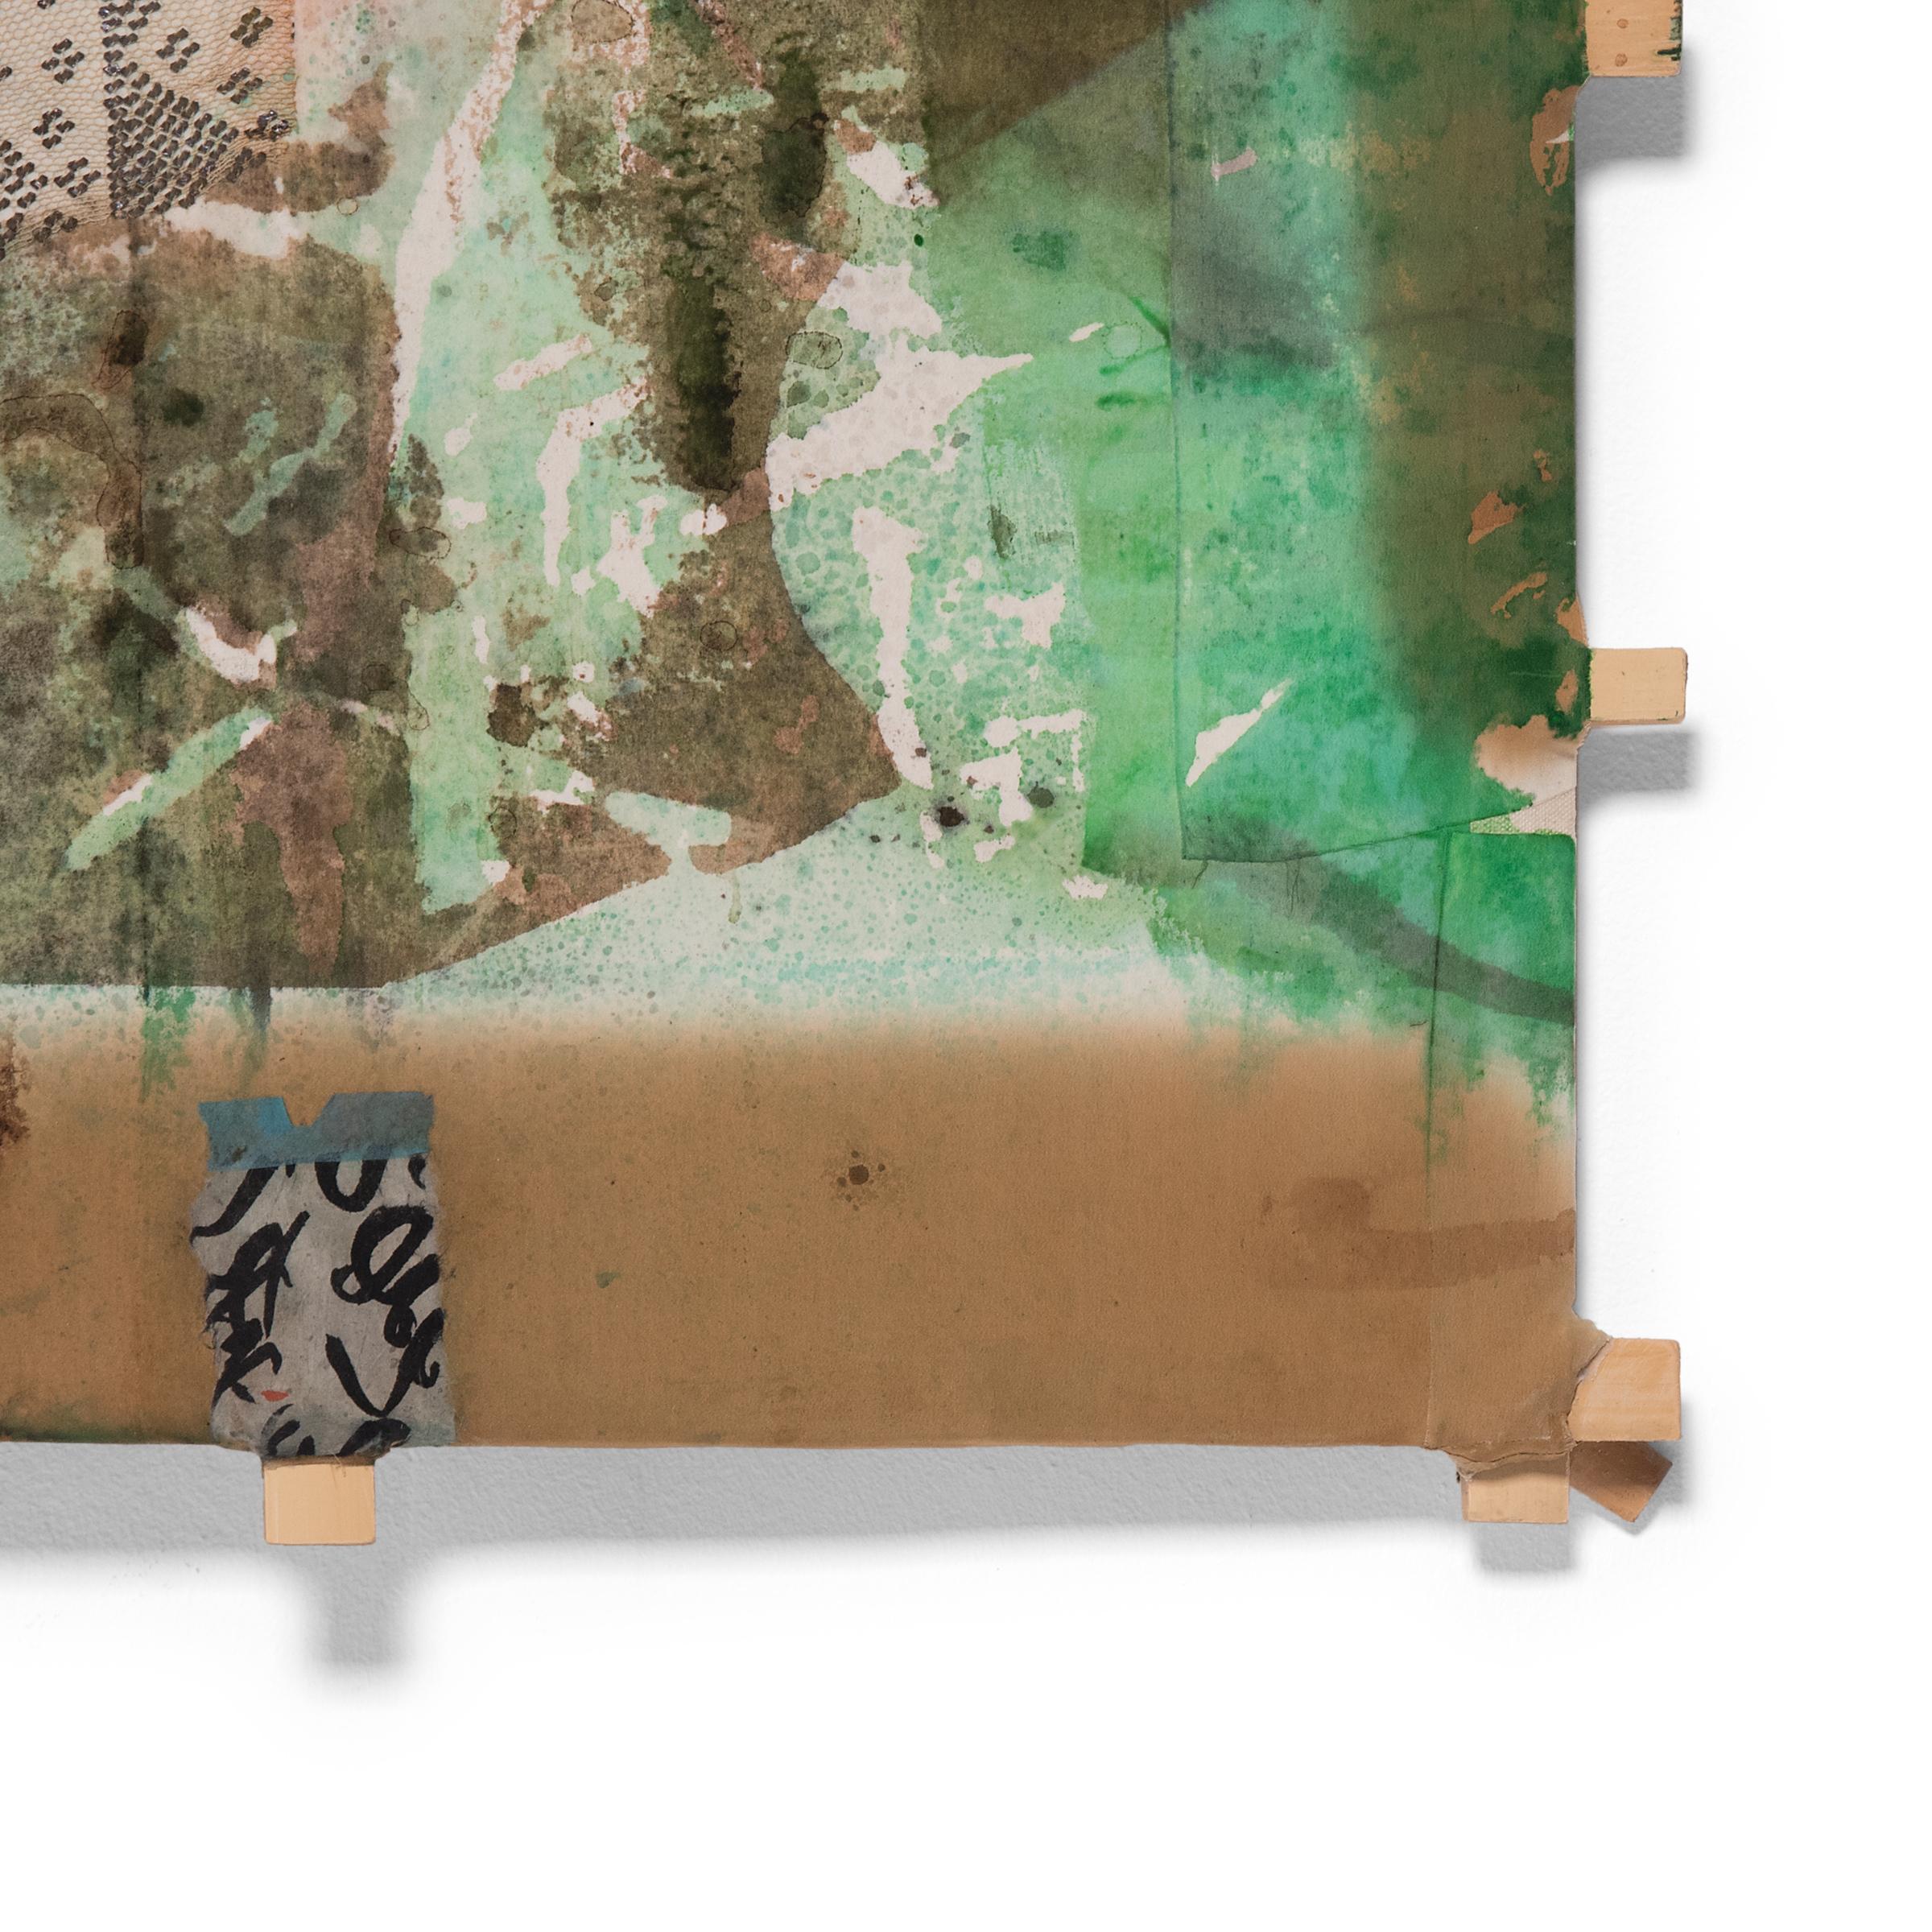 L'artiste Michael Thompson, basé à Chicago, crée des cerfs-volants uniques à partir de cadres en bambou fendu recouverts de mousseline tendue et d'un collage d'éphémères asiatiques vintage - y compris des fragments de tissu, des rouleaux, des